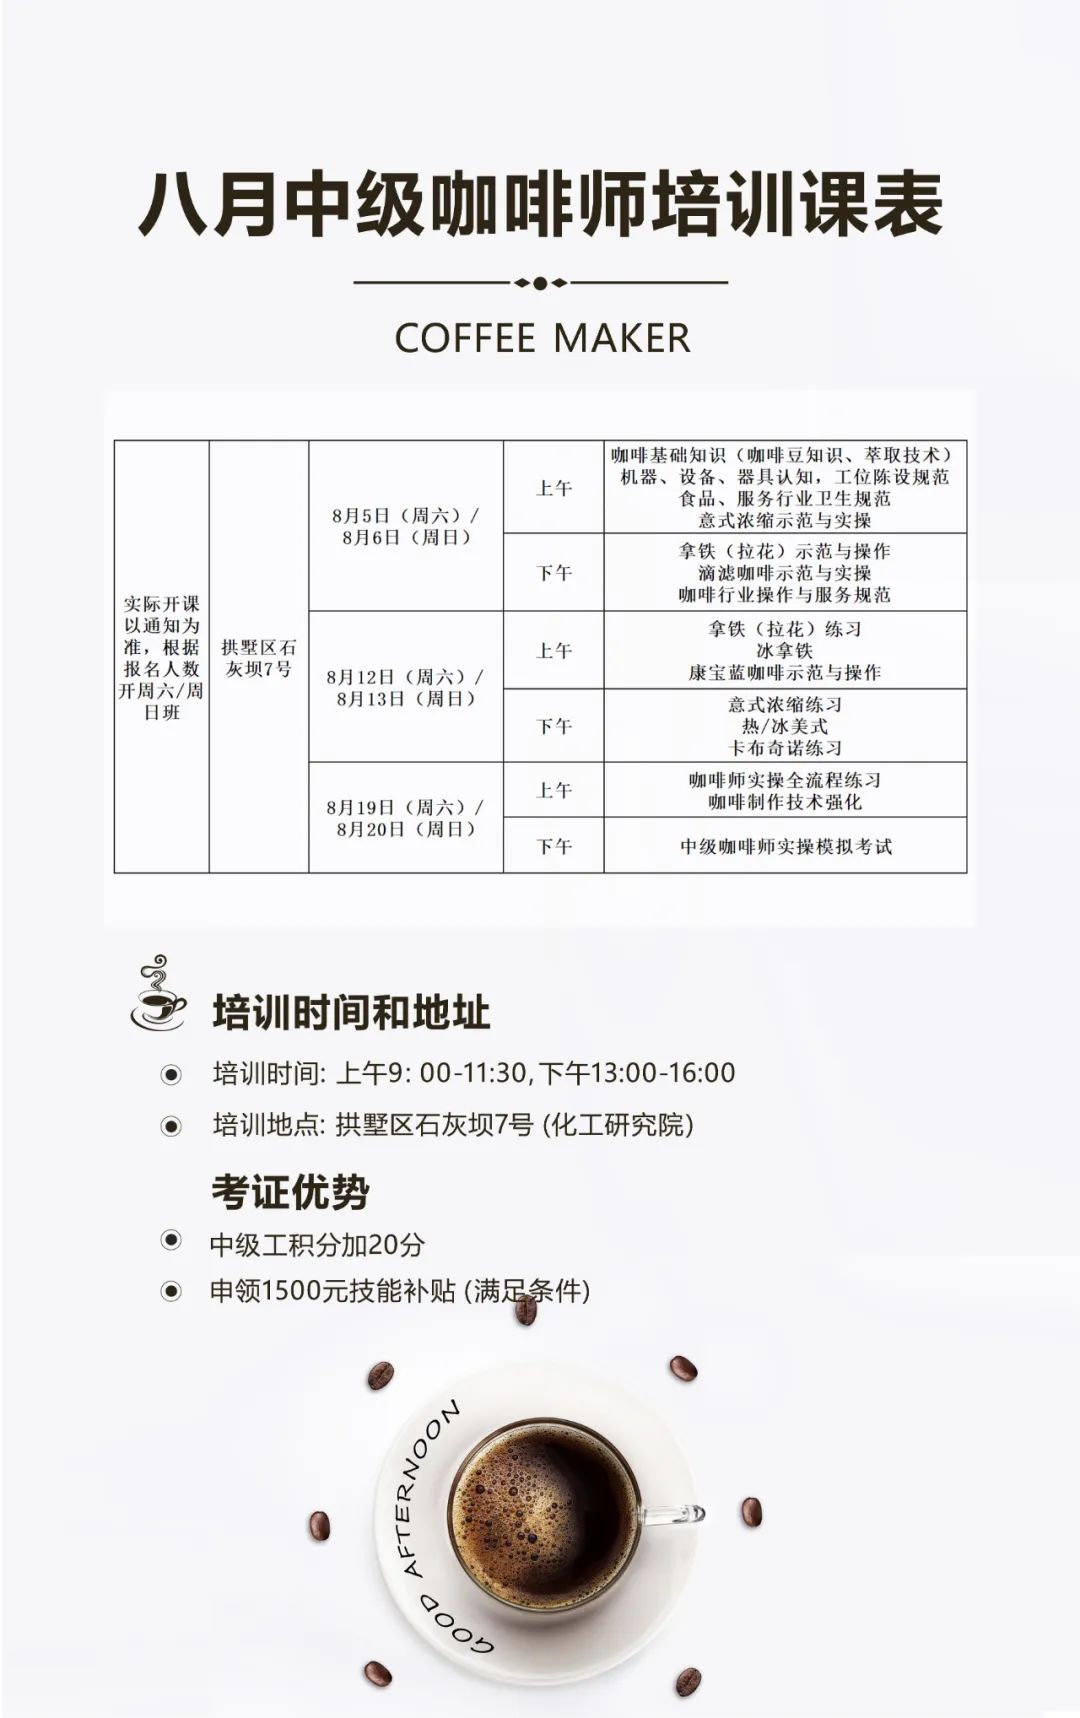 8月杭州考期花艺师和咖啡师最后一天报名，8月19/26日开始考试